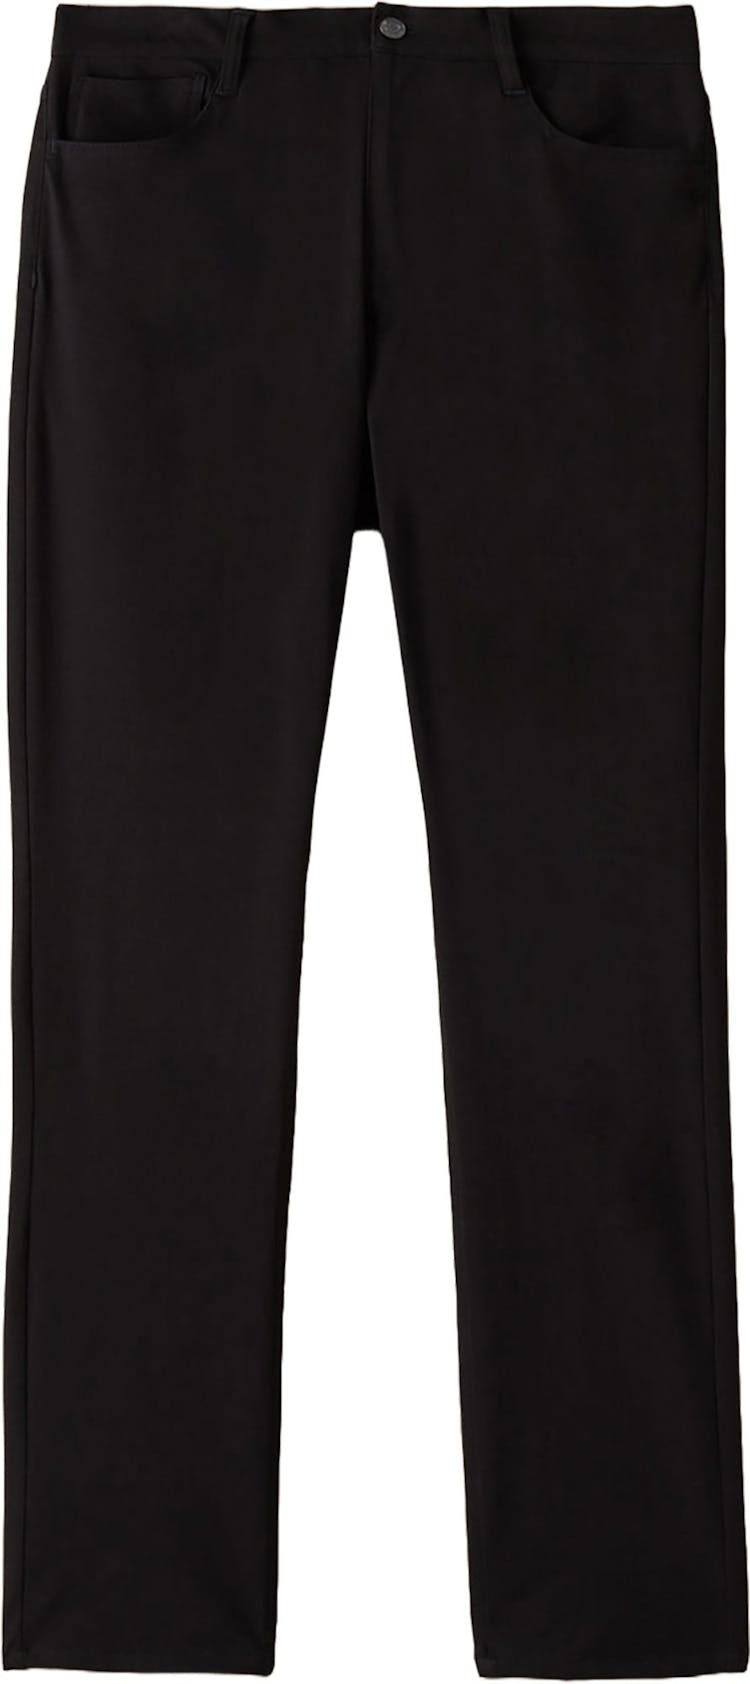 Numéro de l'image de la galerie de produits 1 pour le produit Pantalon coupe ajustée Flex - Homme